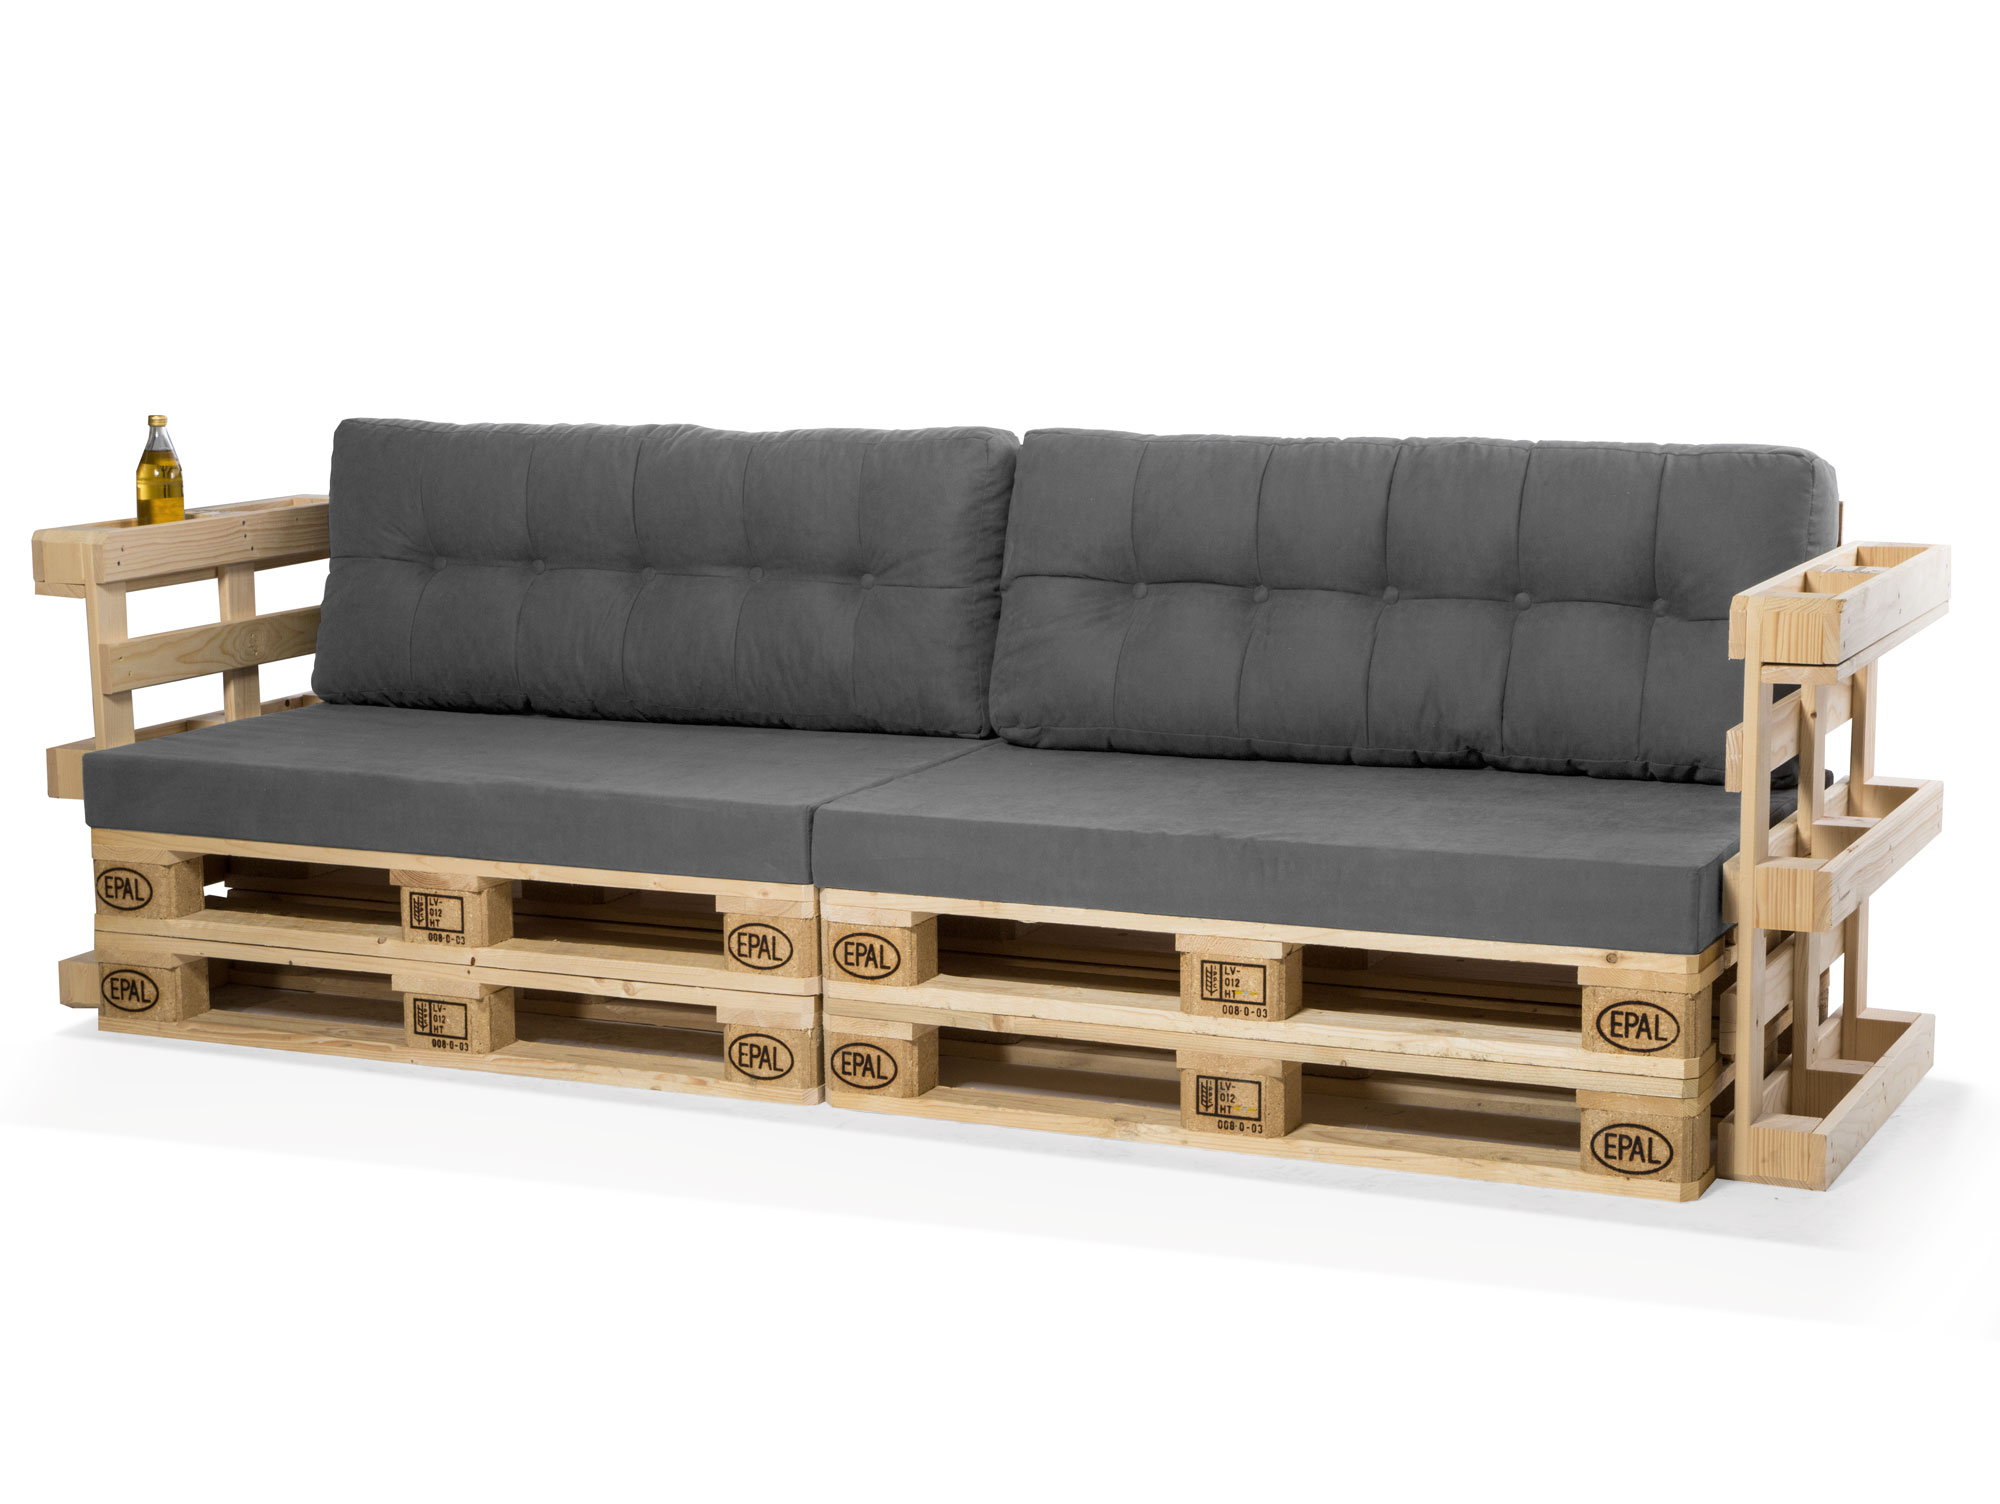 en.casa® Euro Paletten Sofa Grau 2-Sitzer mit Paletten Polster Kissen Lehnen 